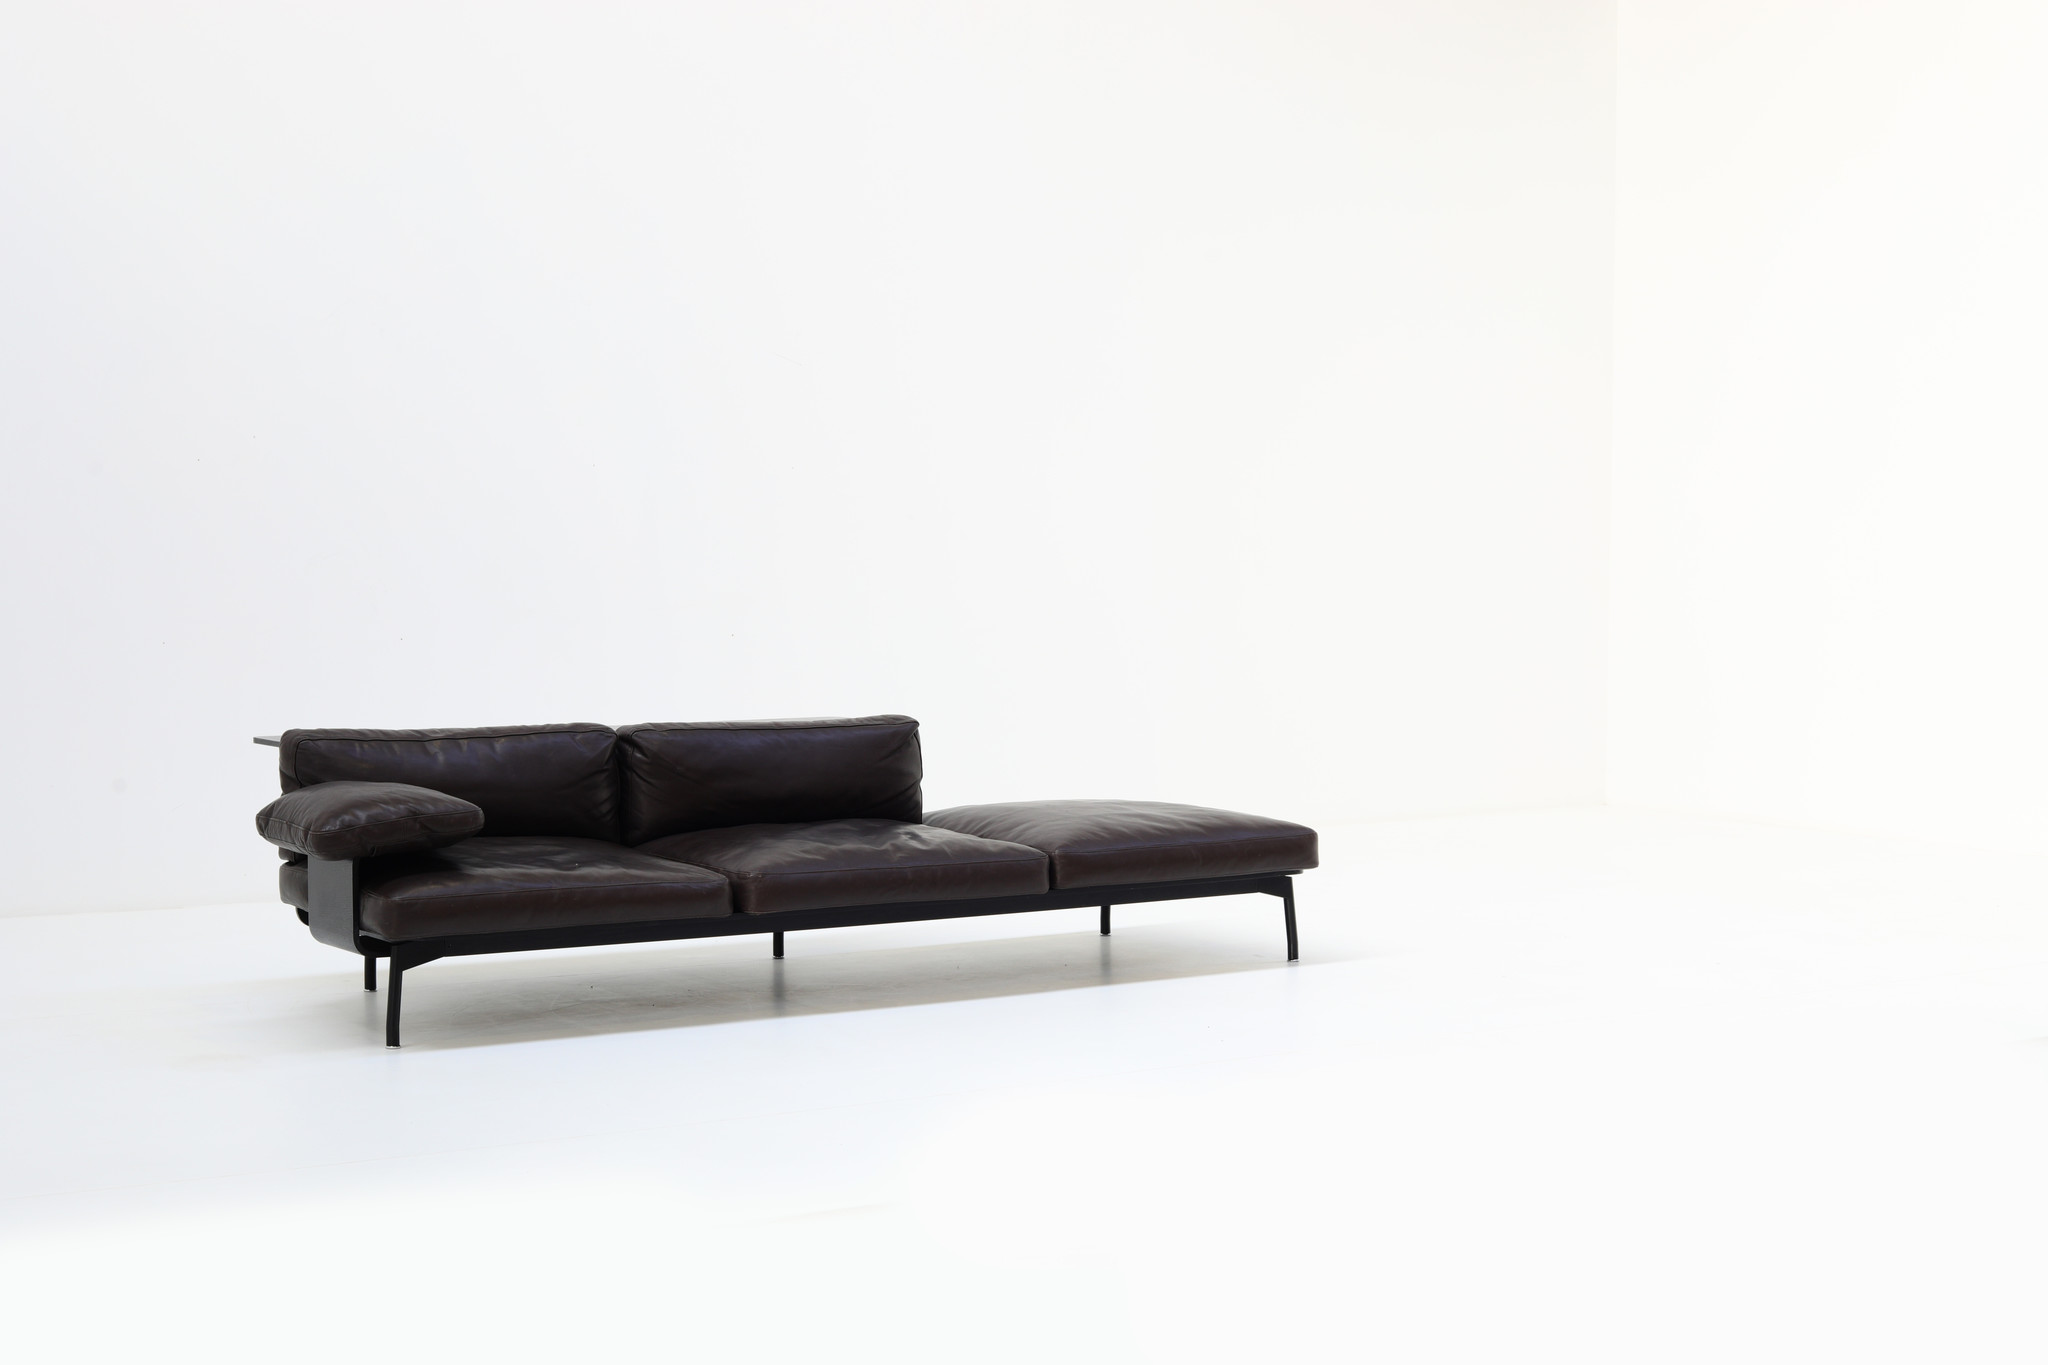 288 Sled sofa by Rodolfo Dordoni for Cassina